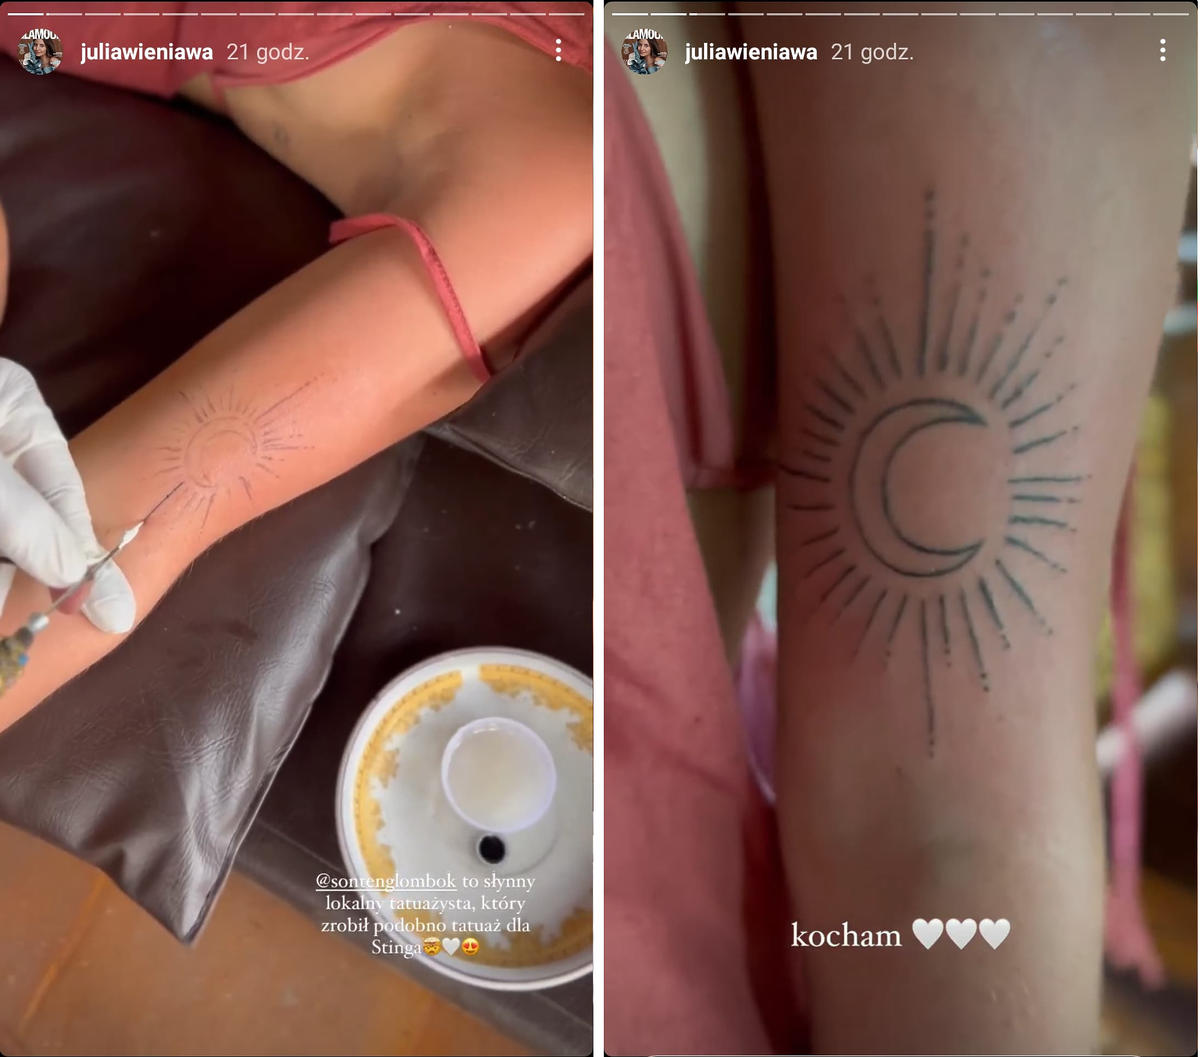 Julia Wieniawa zrobiła sobie na Bali dwa tradycyjne tatuaże. Wiemy, co oznaczają